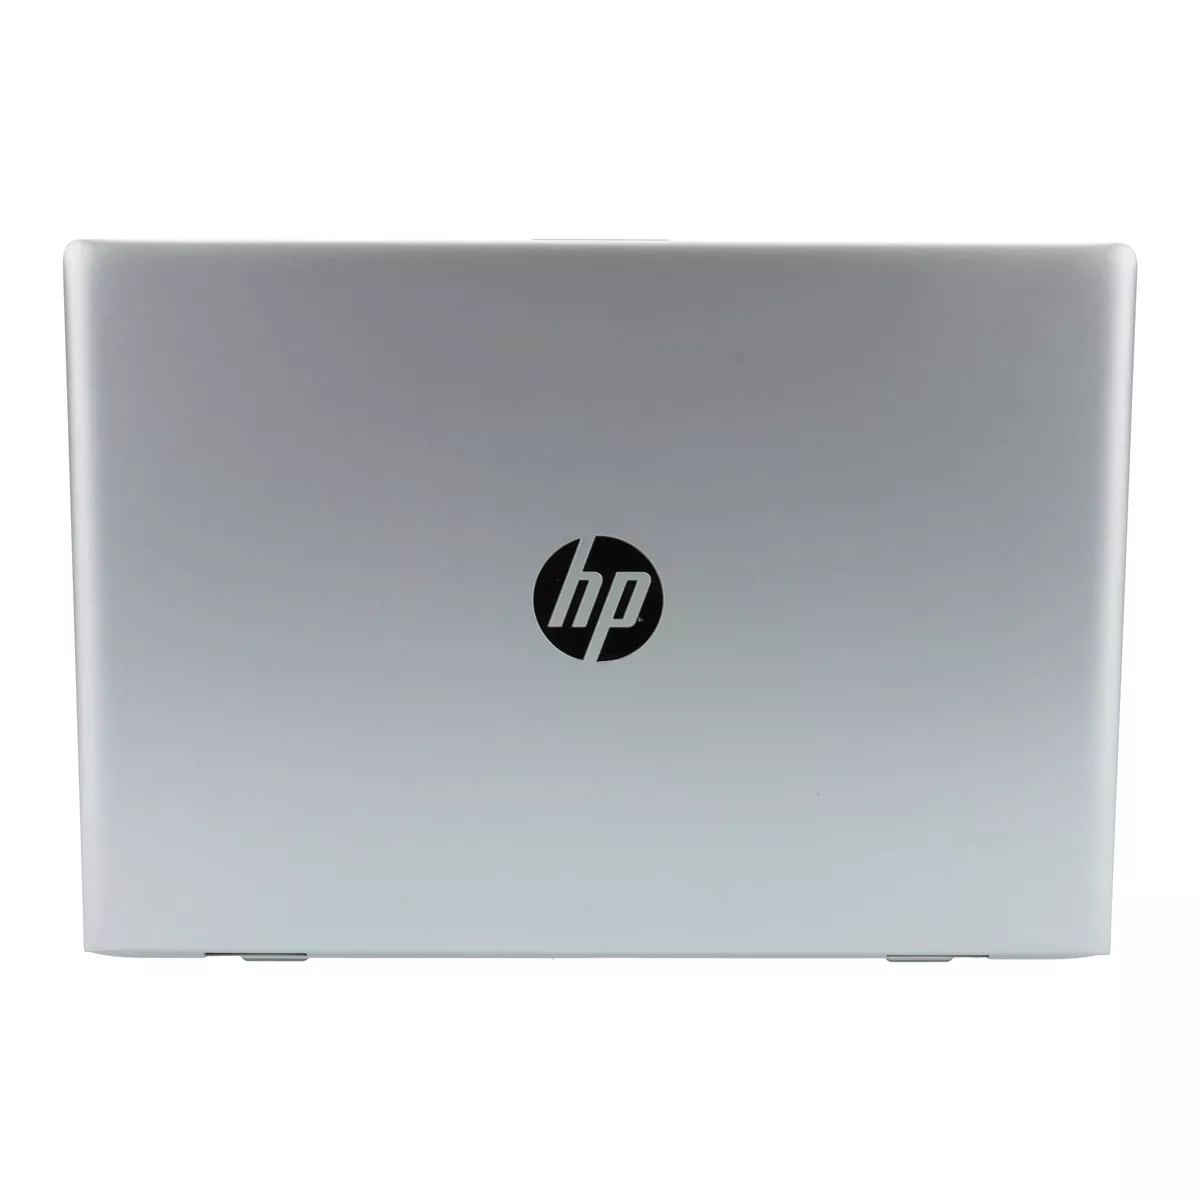 HP ProBook 640 G5 Core i7 8665U Full-HD 8 GB 240 GB M.2 nVME SSD Webcam B